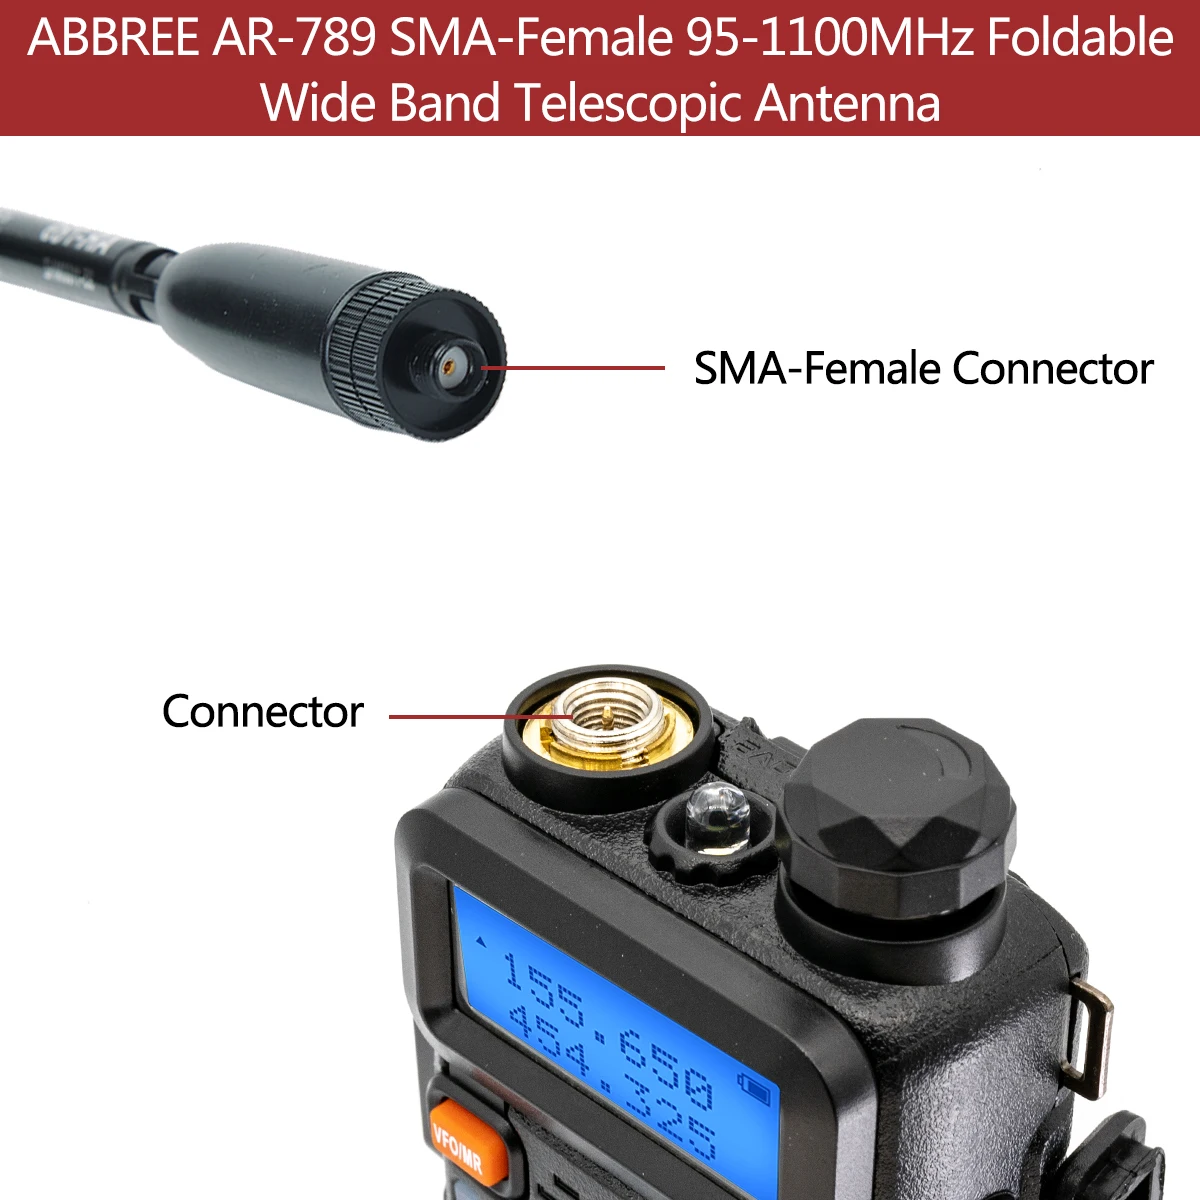 Оригинальная Широкополосная Антенна ABBREE AR-789 95 МГц-1100 МГц SMA-Female Складная Телескопическая Антенна для Портативной Рации Baofeng WOUXUN TYT 1